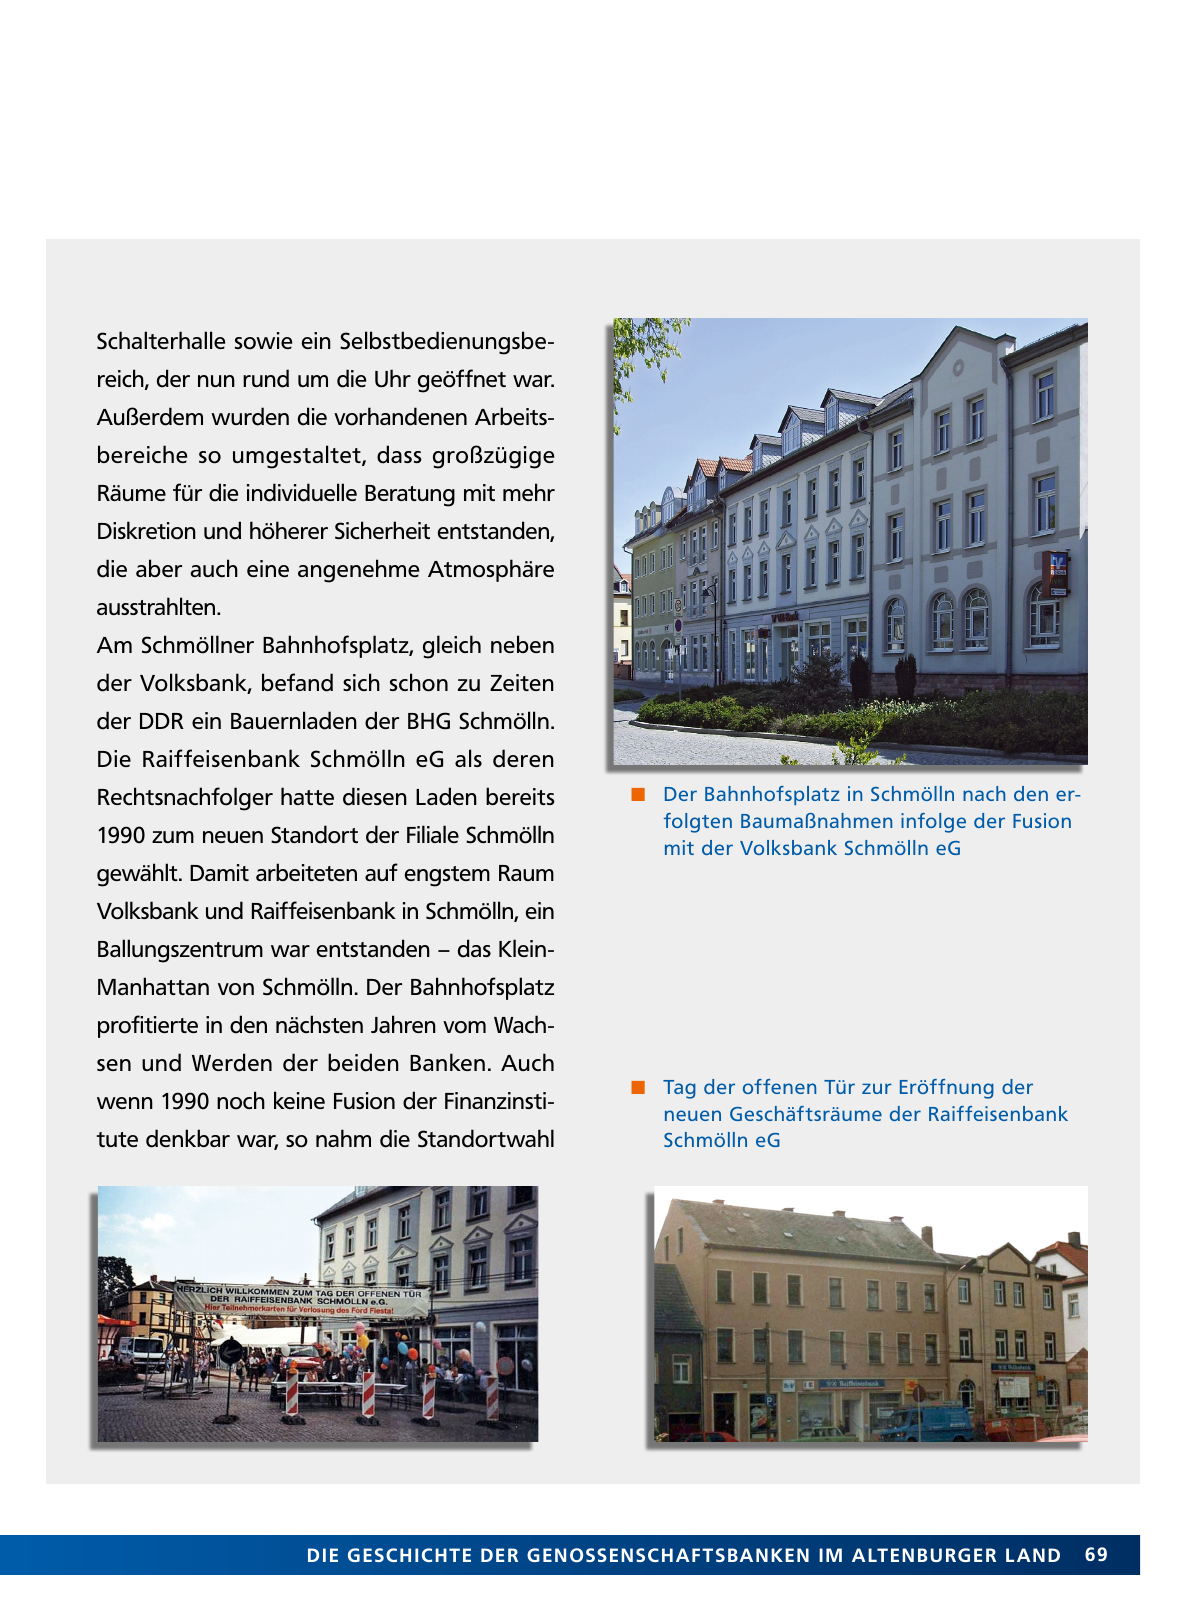 Vorschau Von der Idee, sich selbst zu helfen – 150 Jahre genossenschaftliches Bankwesen im Altenburger Land Seite 69